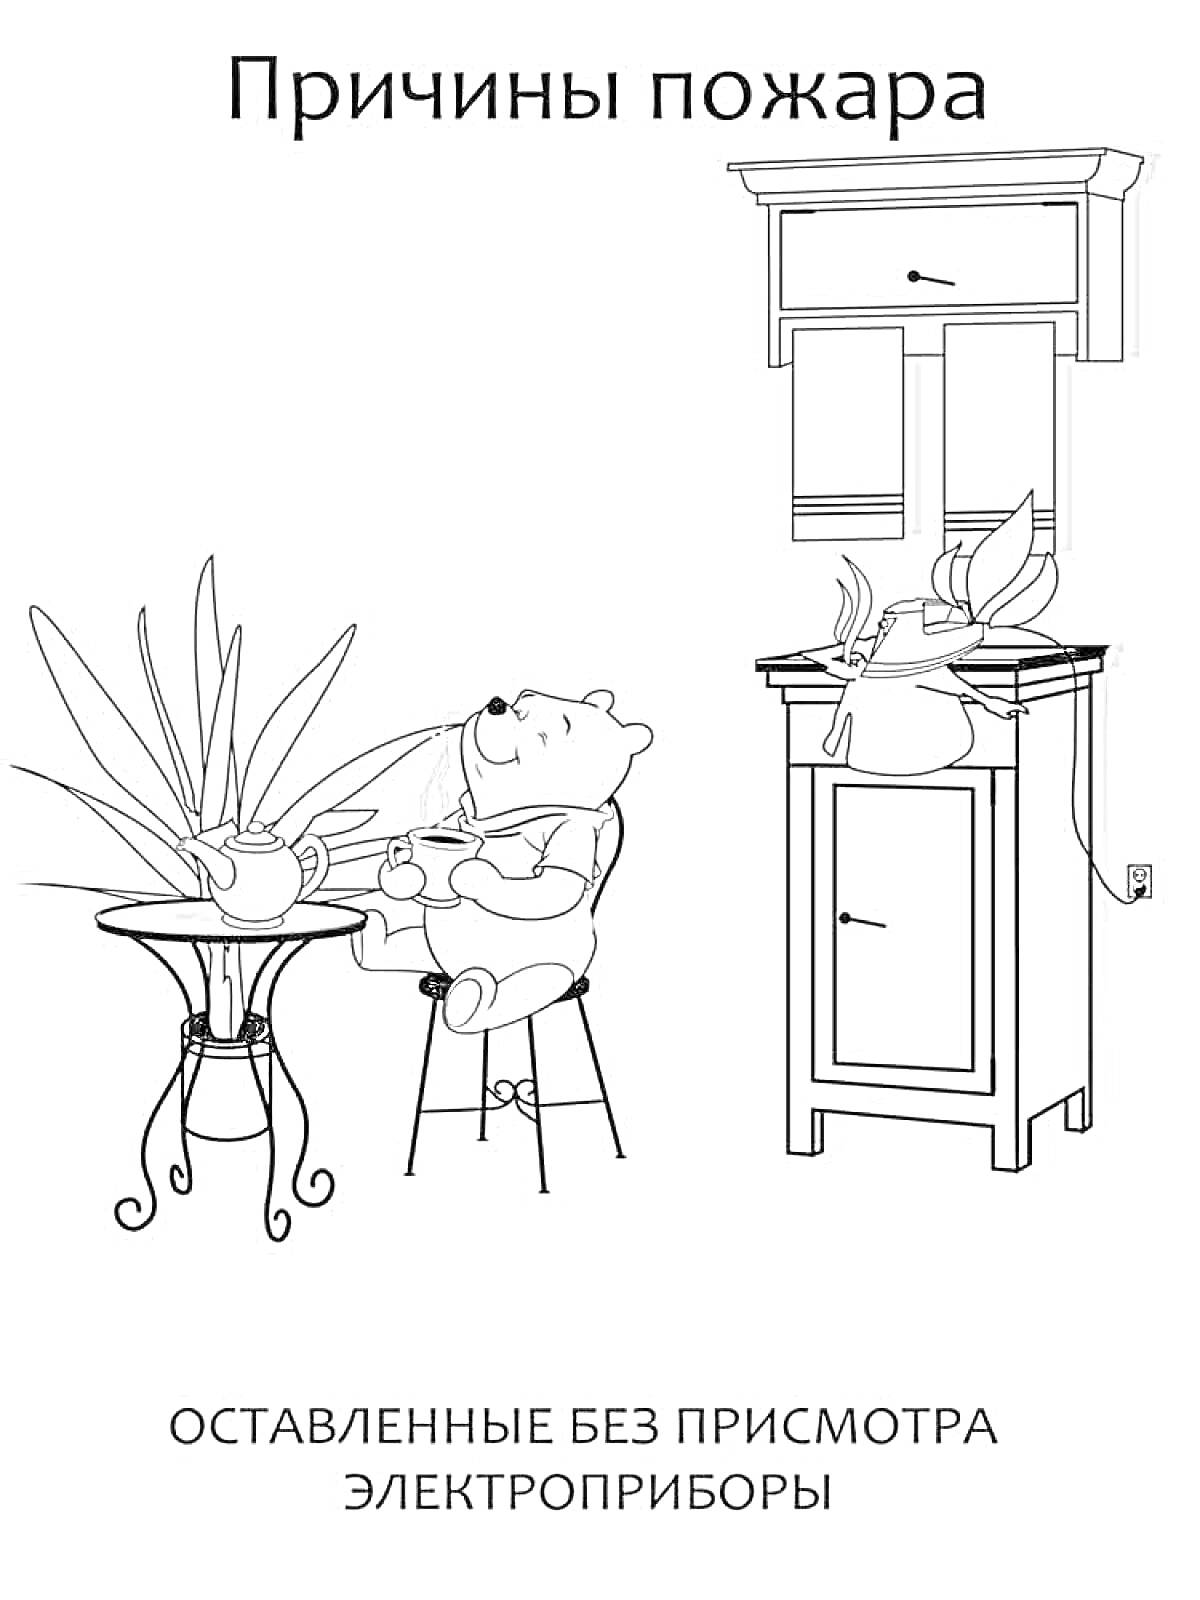 Причины пожара. Оставленные без присмотра электроприборы: включенный электрический чайник на столе рядом с сидящим медвежонком, кухонный шкаф, горящая плита с кастрюлей, комнатное растение.